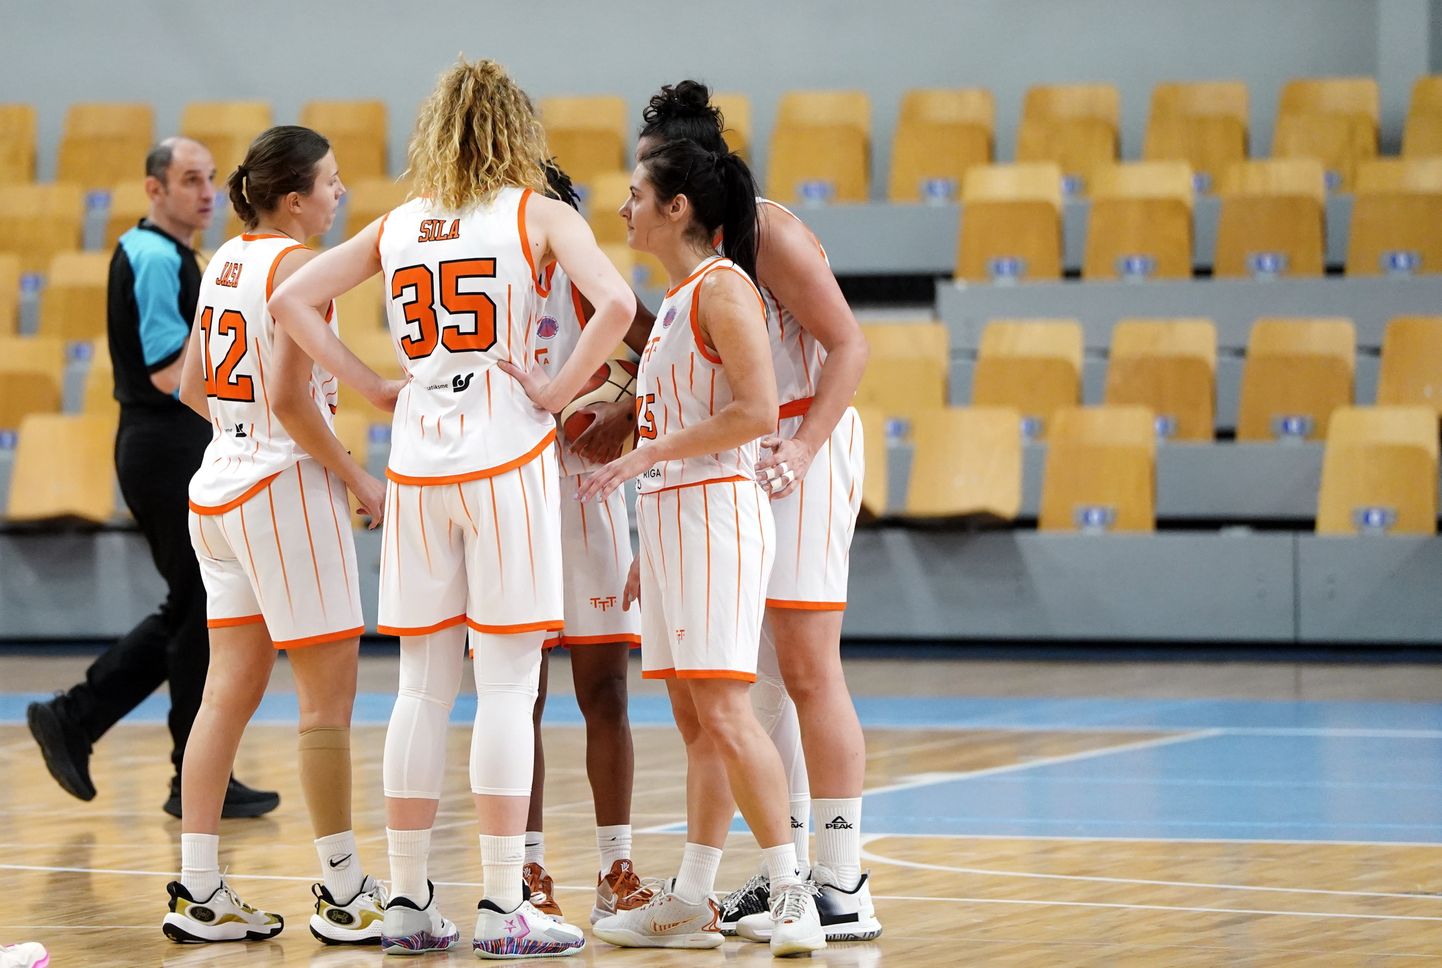 FIBA Eirokausa spēl basketbolā sievietēm starp "TTT Rīga" un Turcijas "Melikgazi Kayseri" komandām "Rimi" Olimpiskajā centrā.